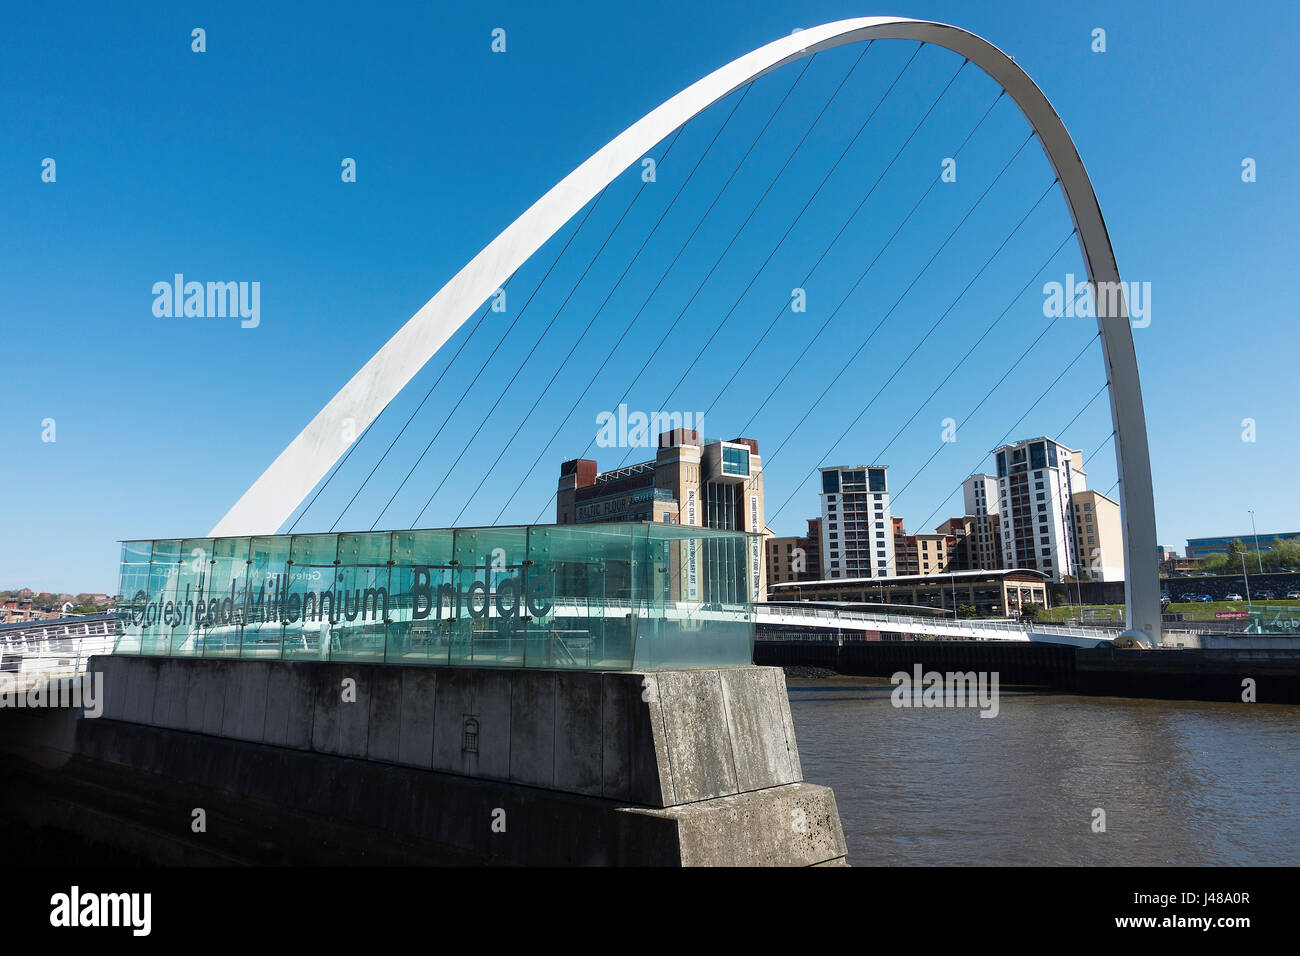 Die berühmten Gateshead Millennium Bridge und Baltic Centre in Newcastle Quayside Fluss Tyne, Tyne and Wear England Vereinigtes Königreich UK Stockfoto